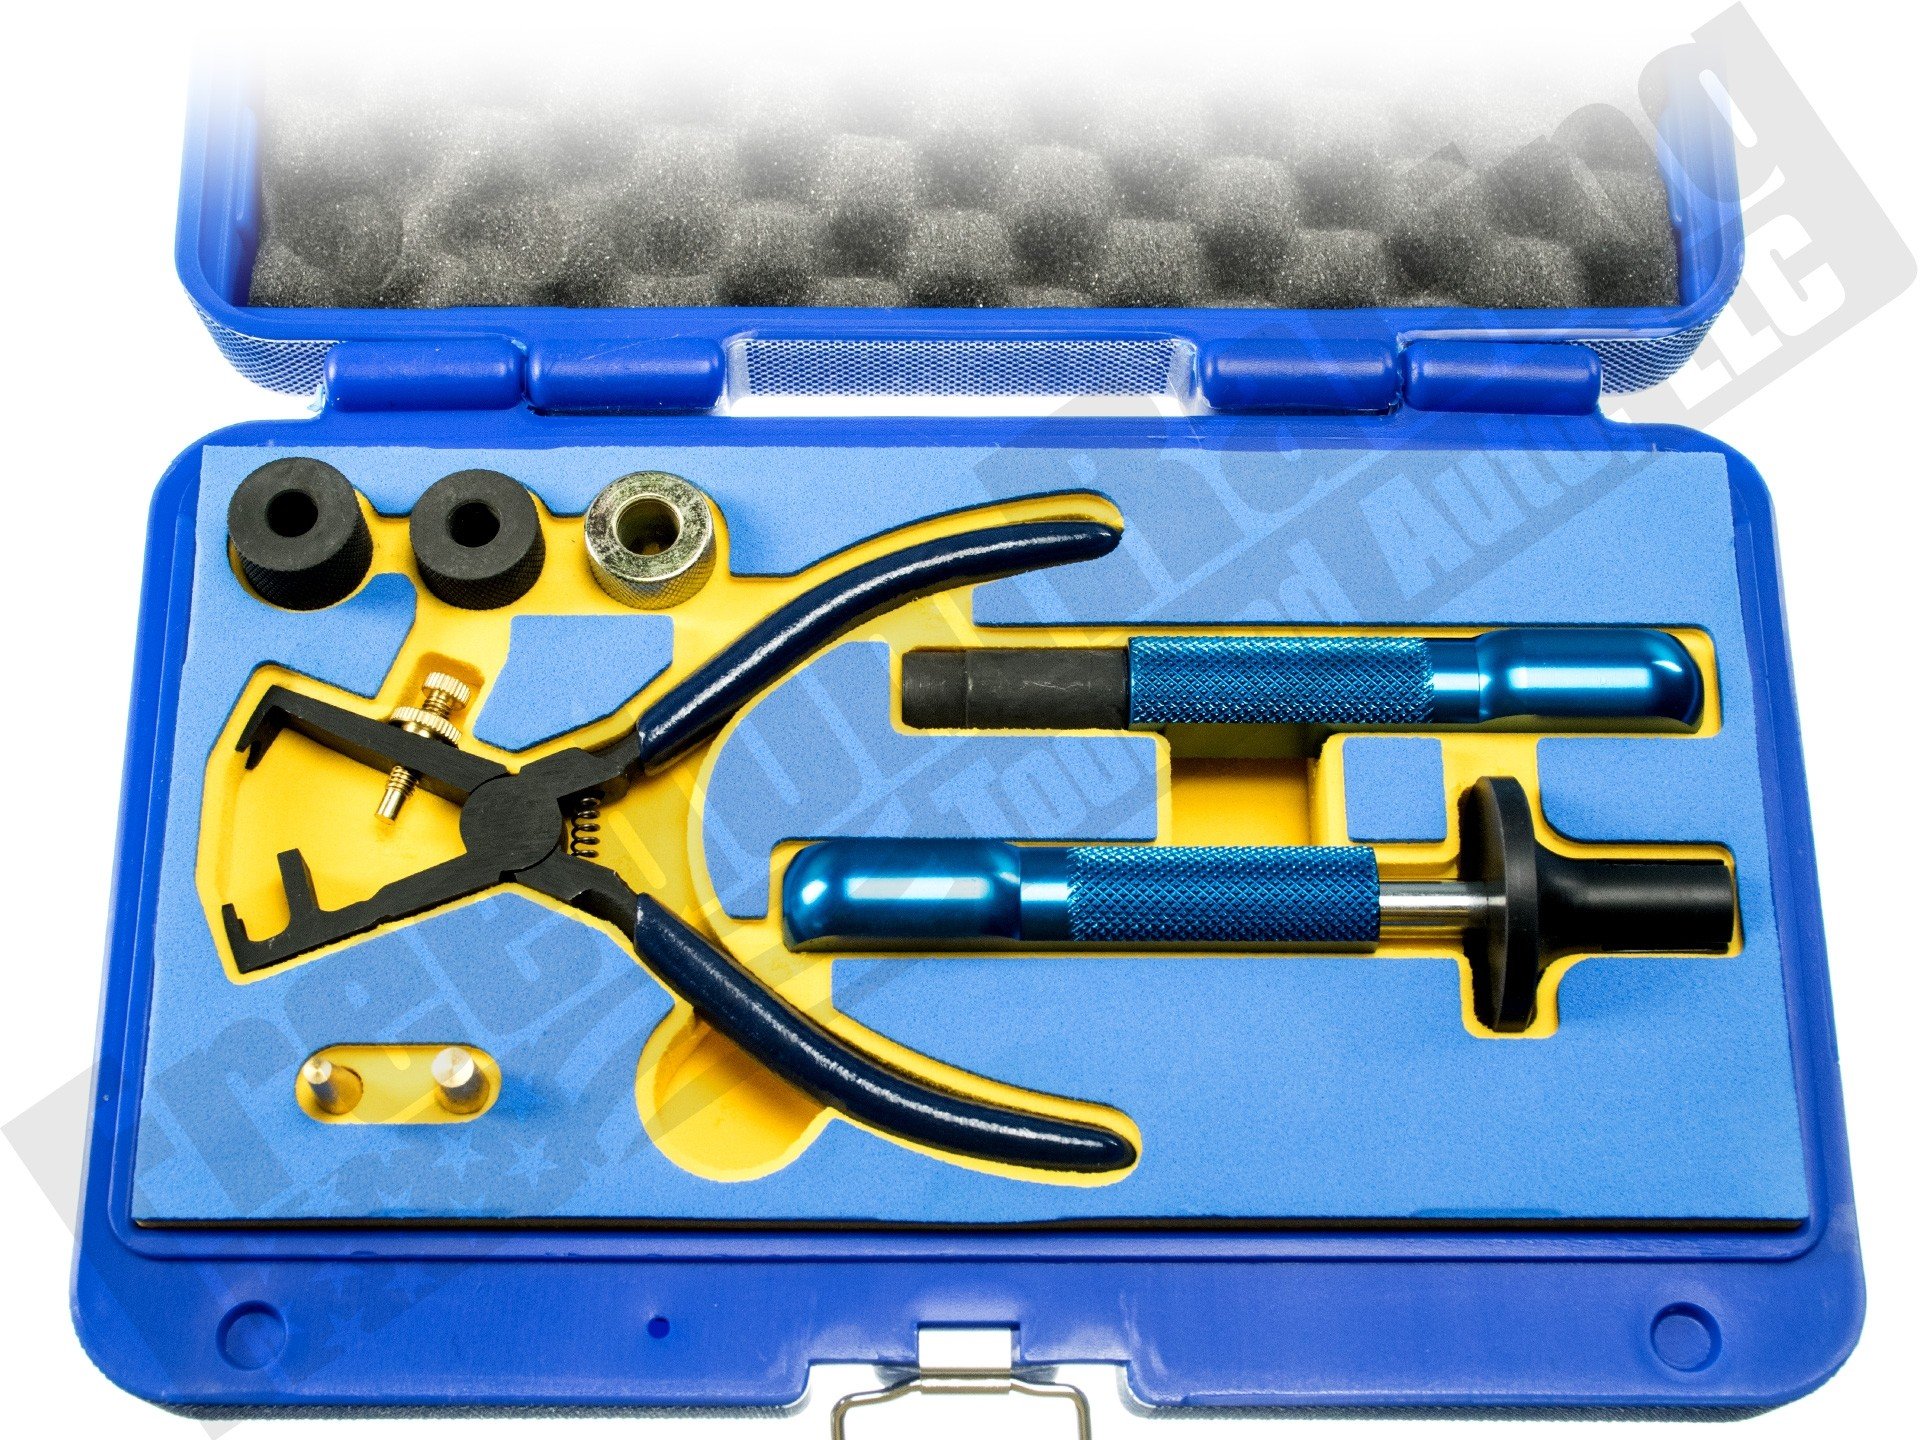 Fuel Injector Tool Removal Installer Puller For BMW N14/N18/N20/N26/N53 N54 N55 